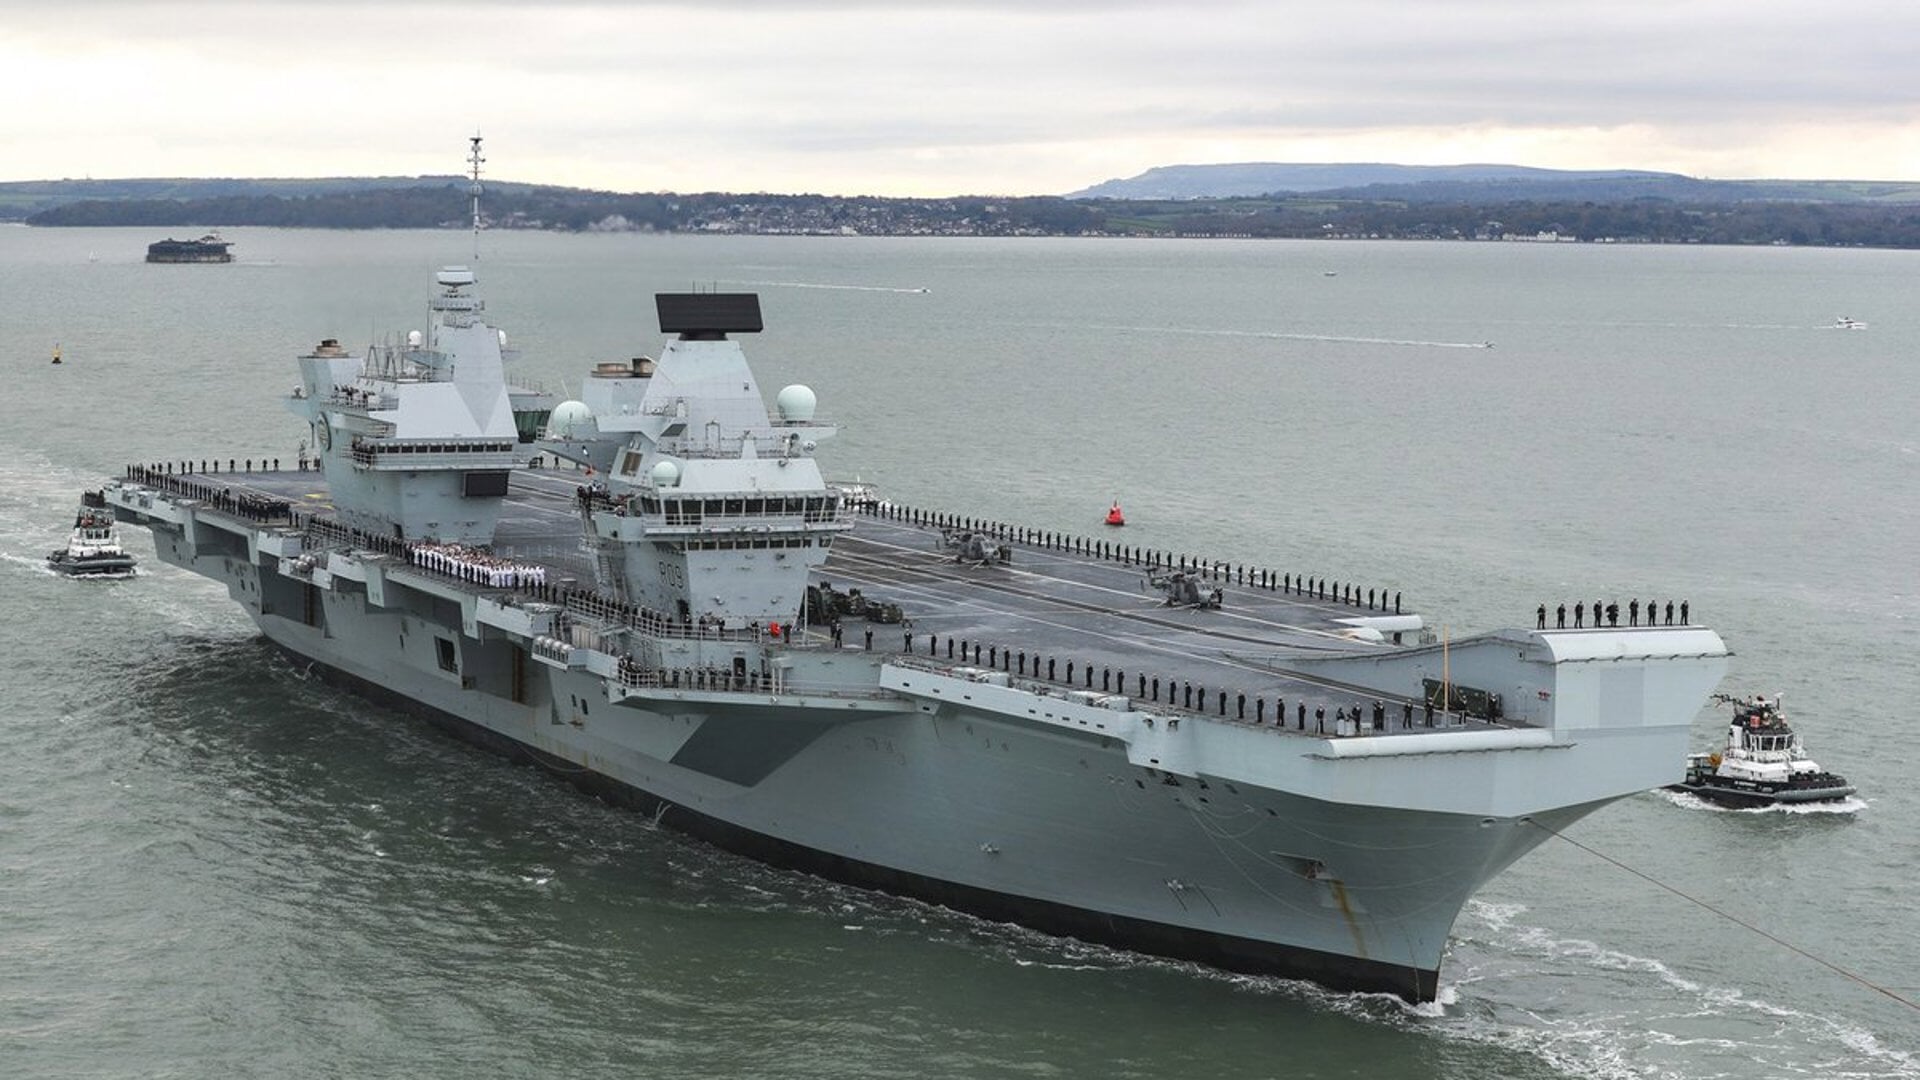 HMS Prince of Wales. Het vliegdekschip wordt dinsdagochtend in de Europahaven bij de Rhenus-terminal verwacht. Foto: Royal Navy